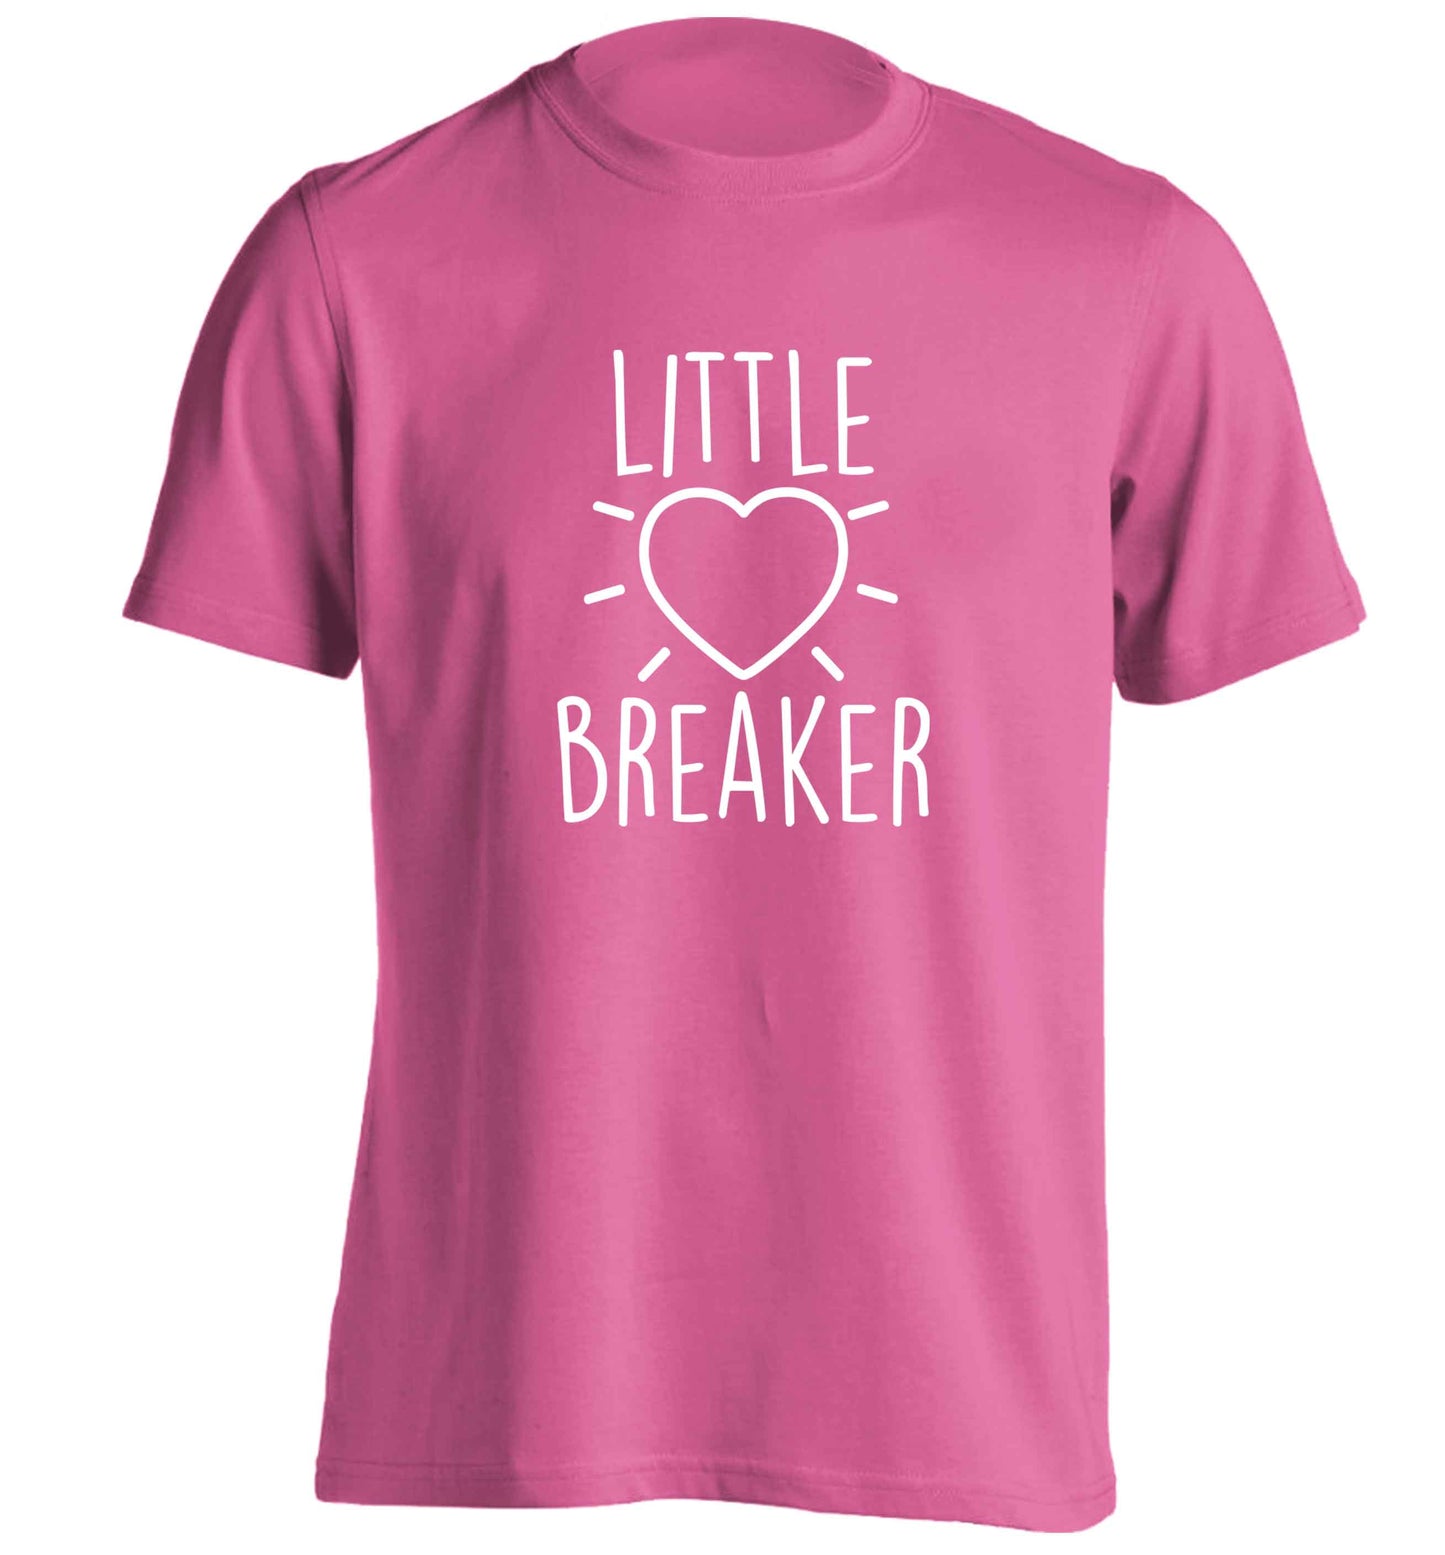 Little heartbreaker adults unisex pink Tshirt 2XL